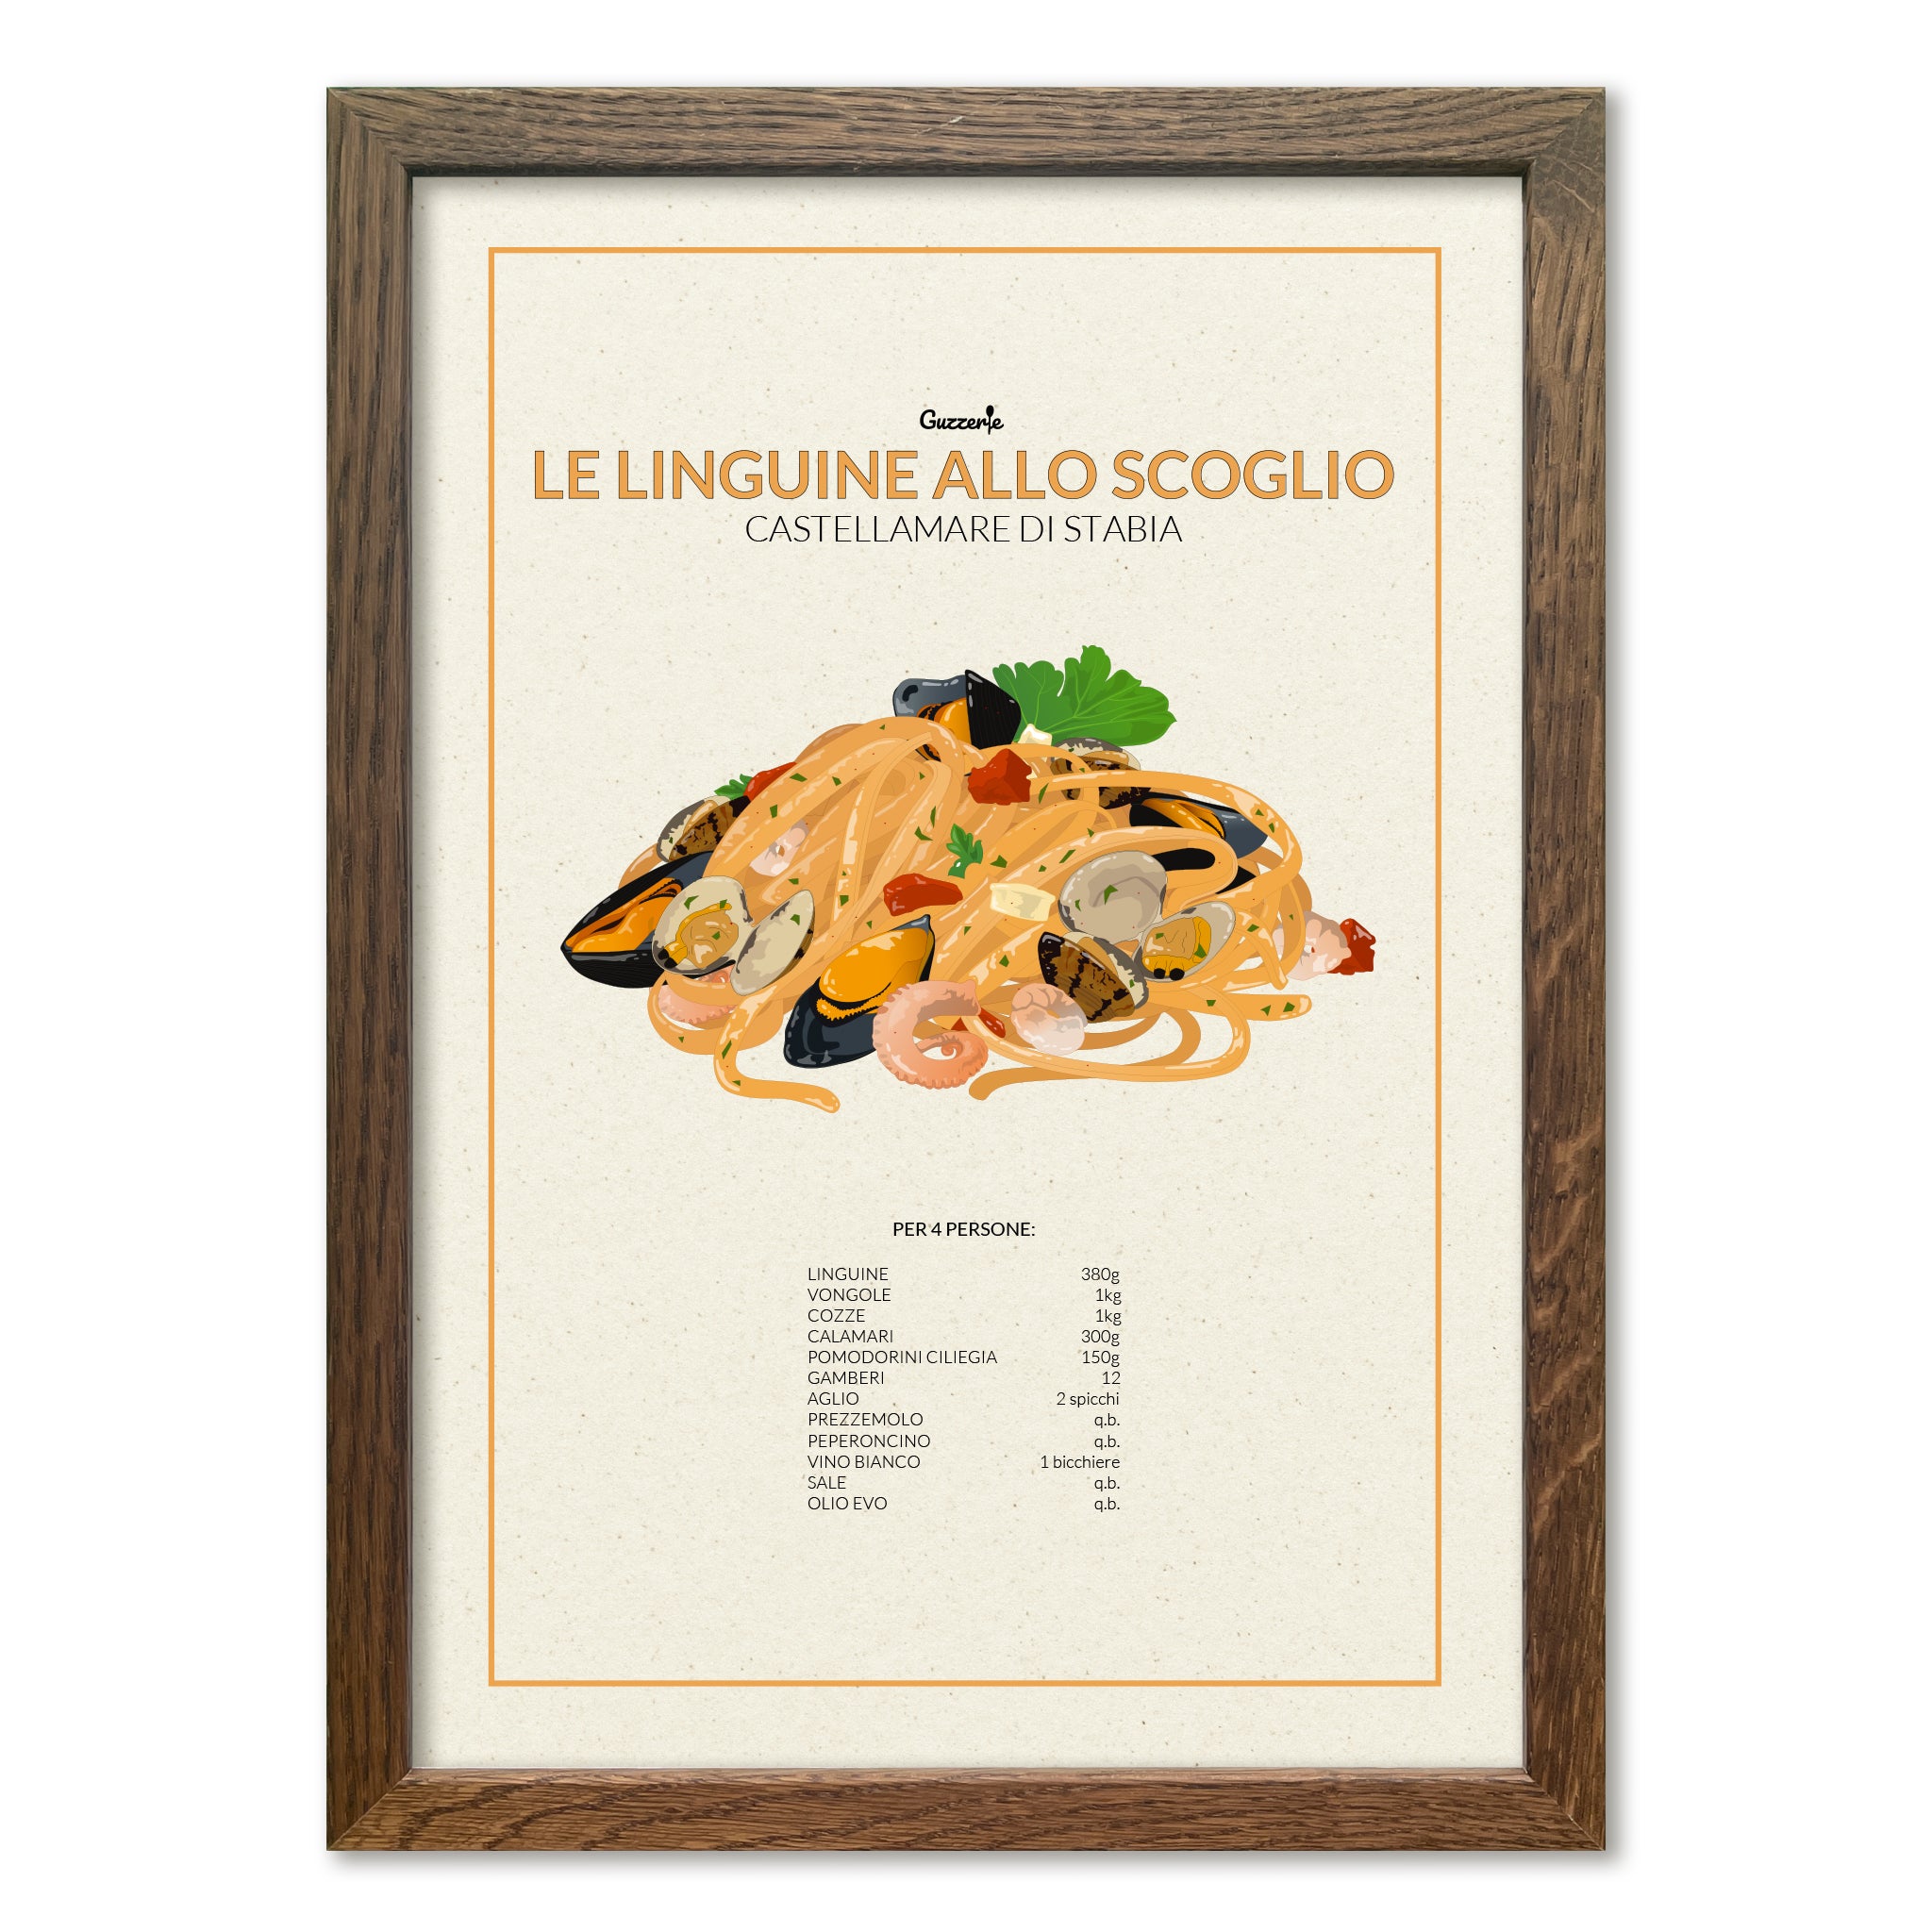 Iconic Poster of Le Linguine Allo Scoglio | Guzzerie